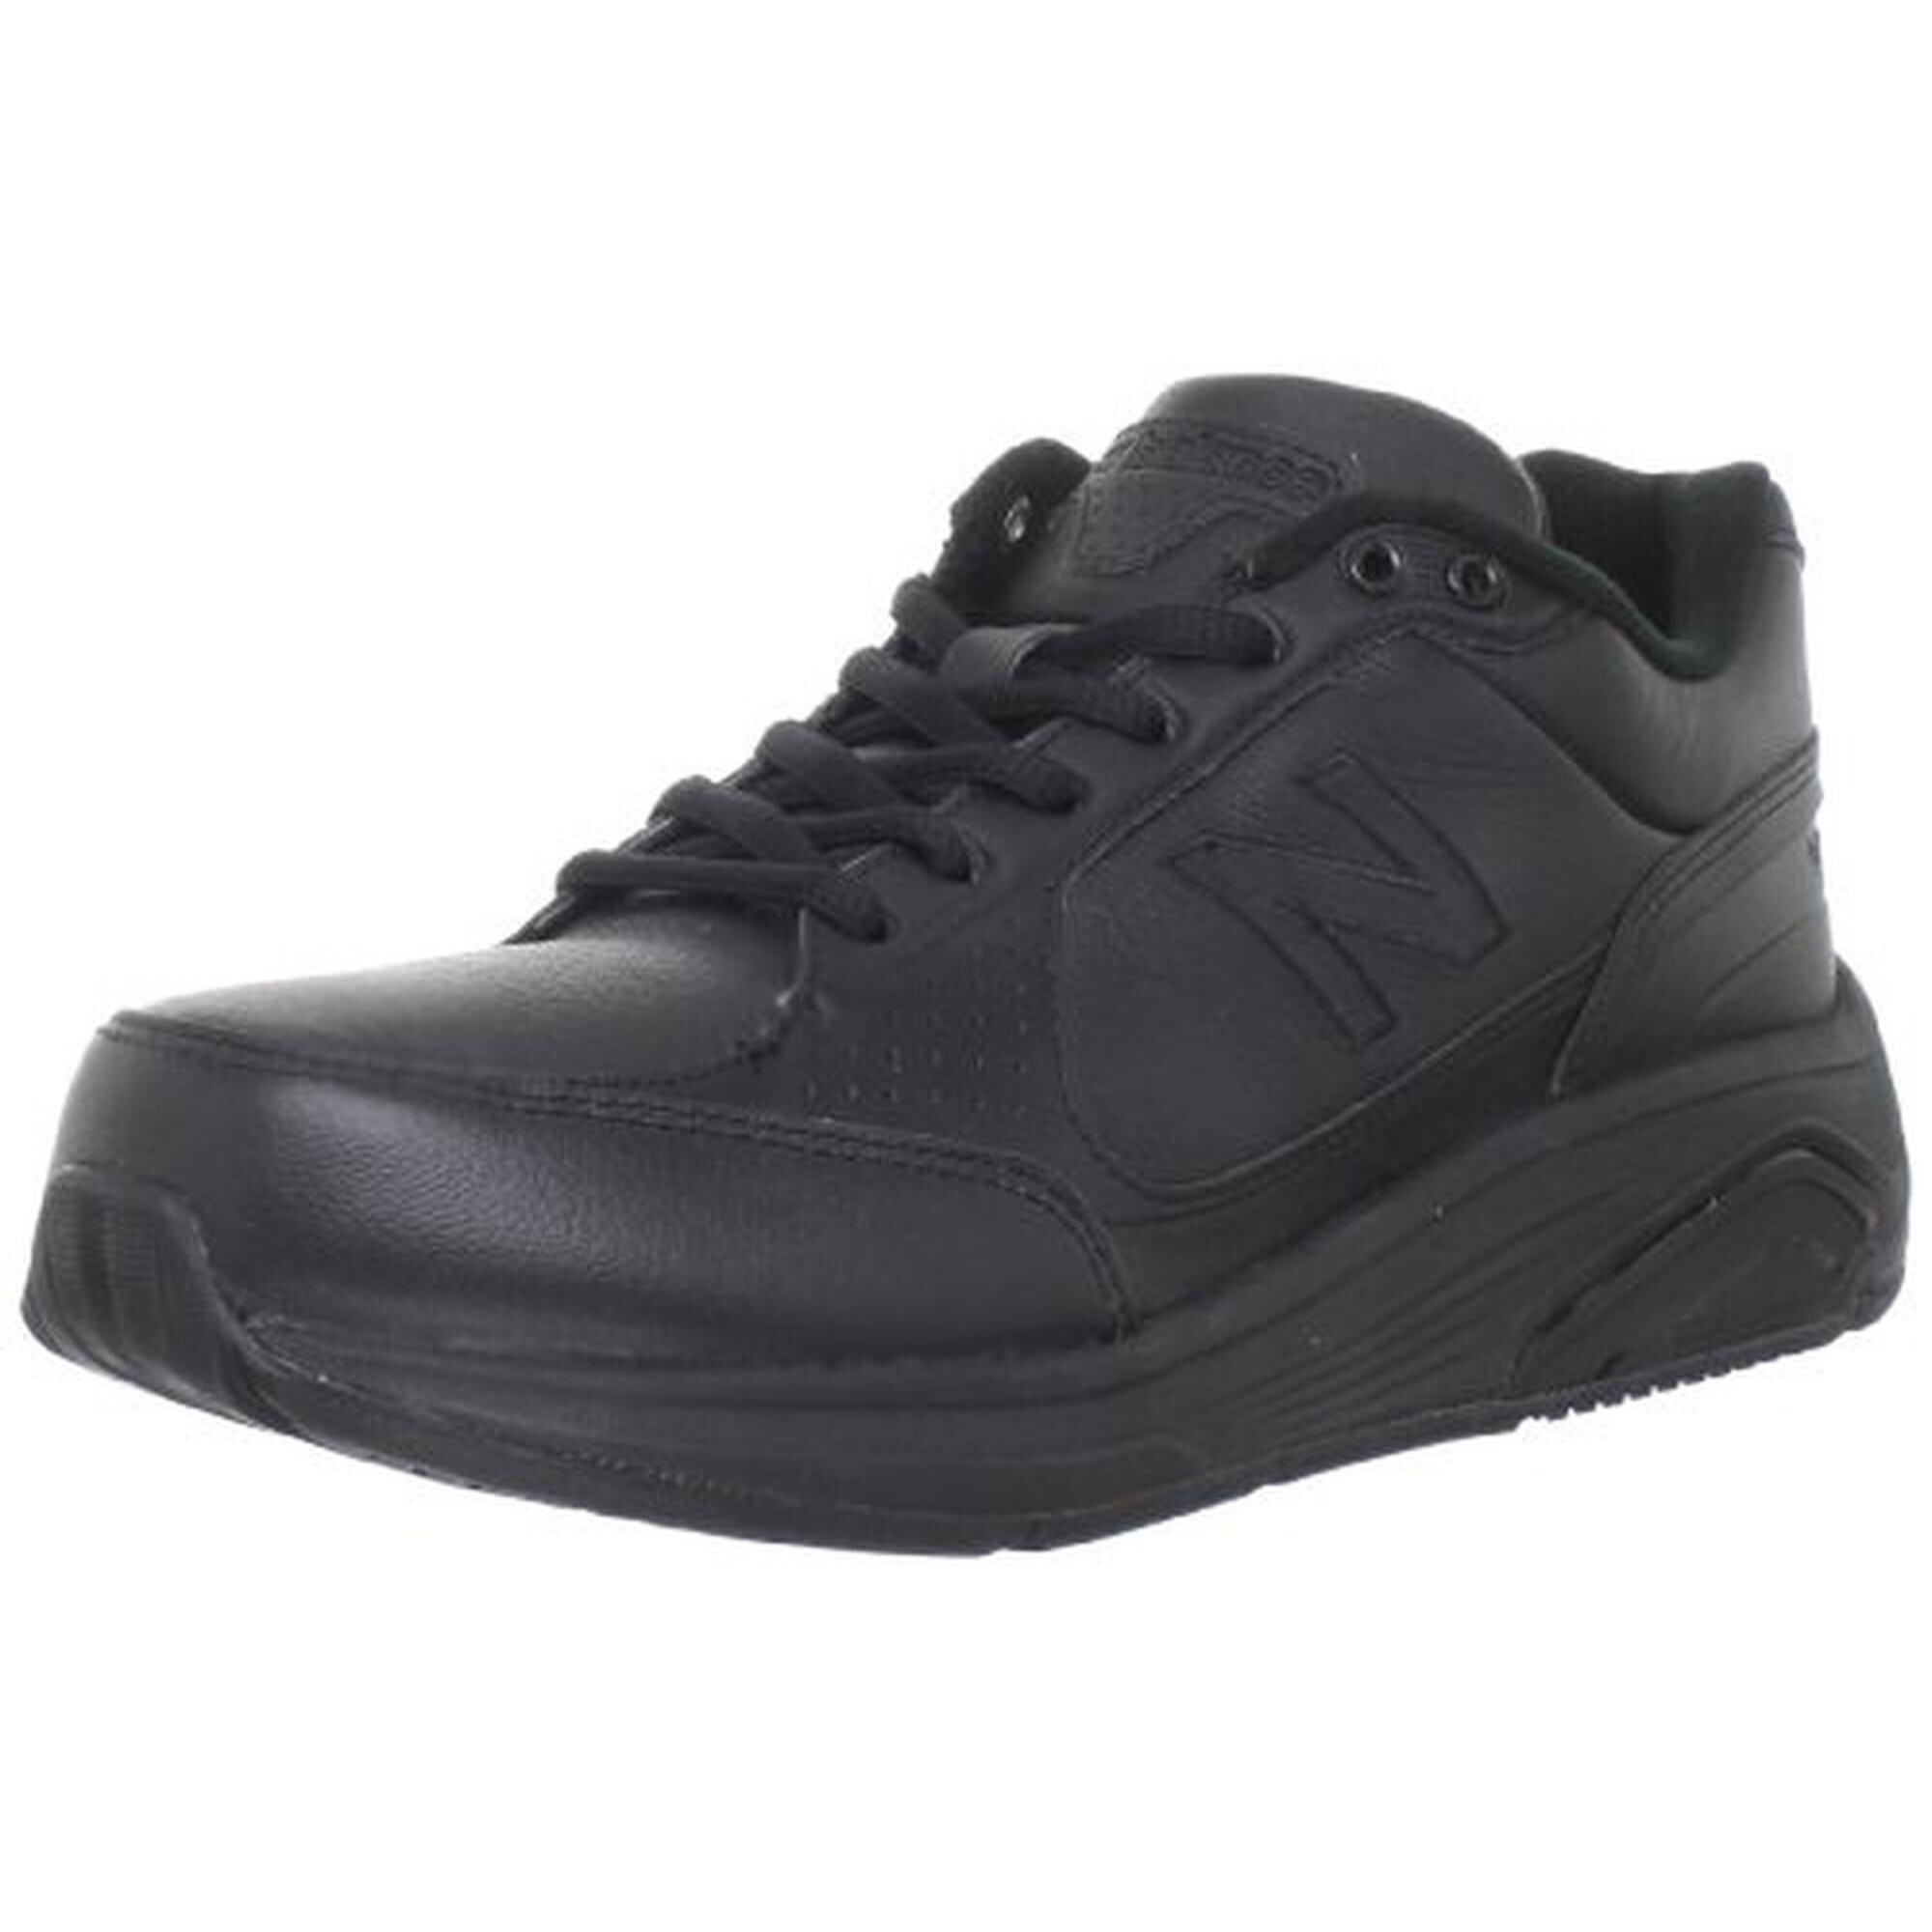 new balance black leather walking shoes